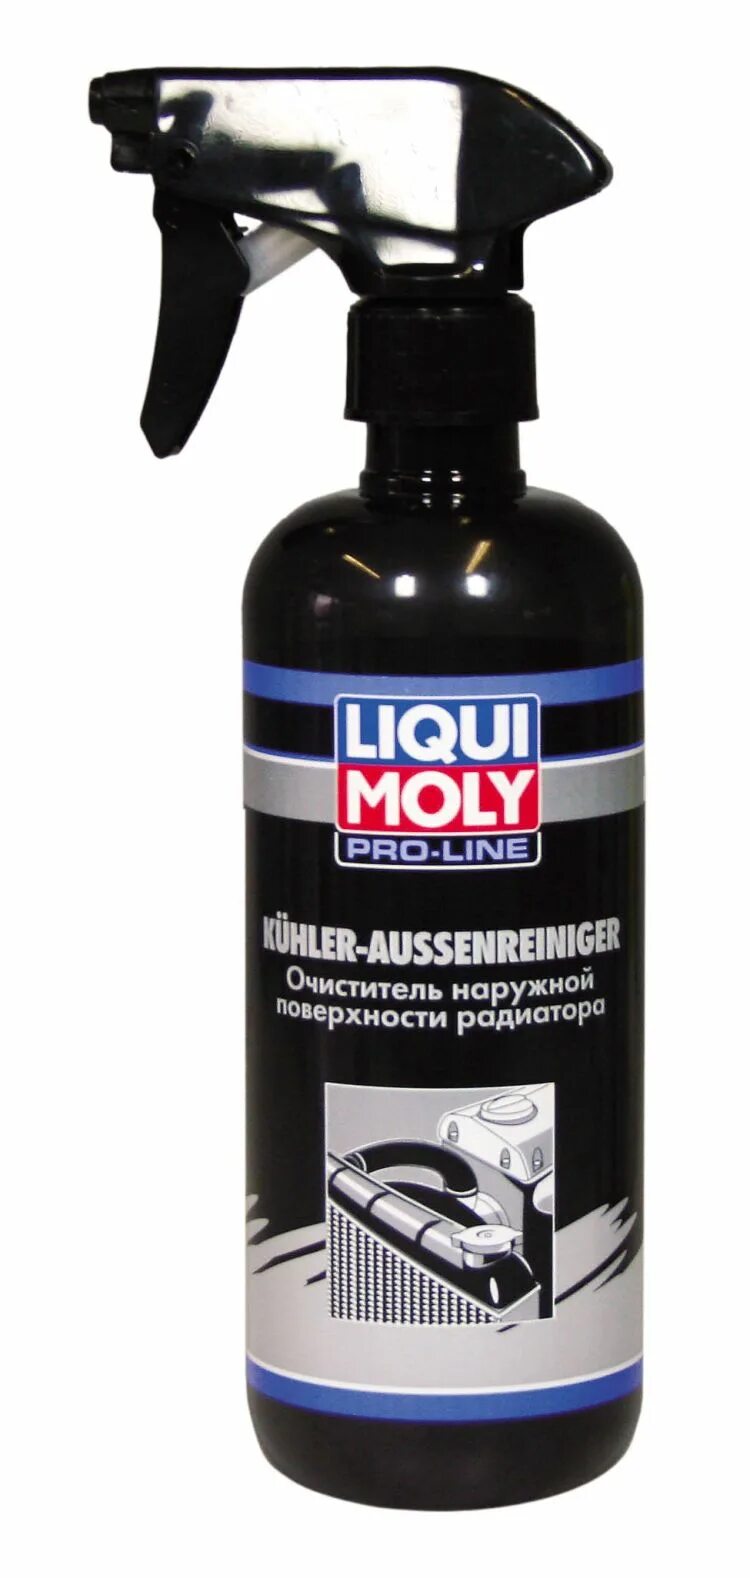 Очиститель Liqui Moly KUHLER Aussenreiniger. Очиститель радиатора Ликви моли. Очиститель наружной поверхности радиатора KUHLER Aussenreiniger 0,5л. Liqui Moly очиститель радиатора.